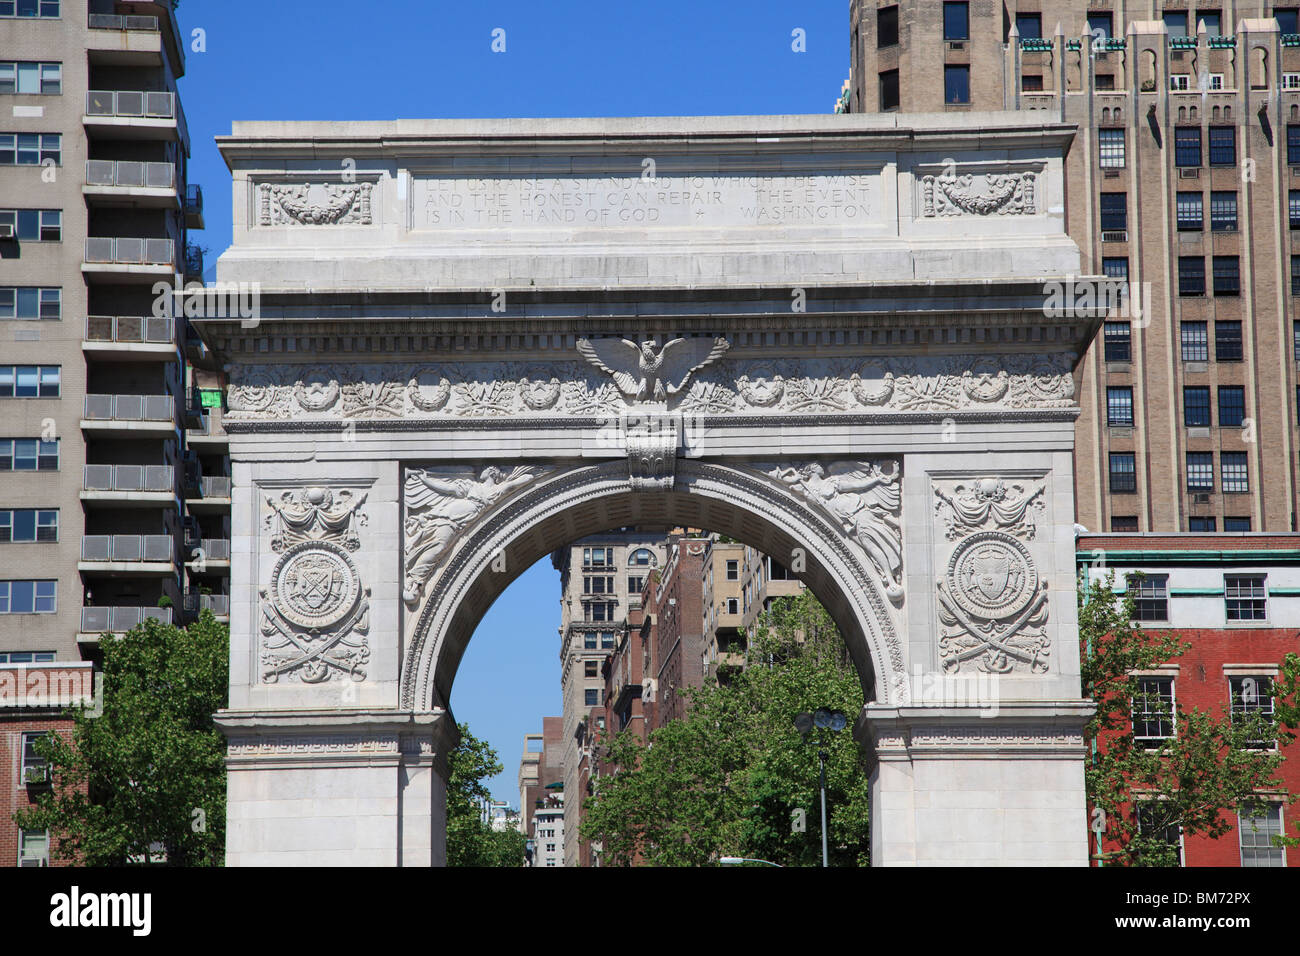 Washington Square Park, Washington Square Arch, Greenwich Village, West Village, à Manhattan, New York City, USA Banque D'Images